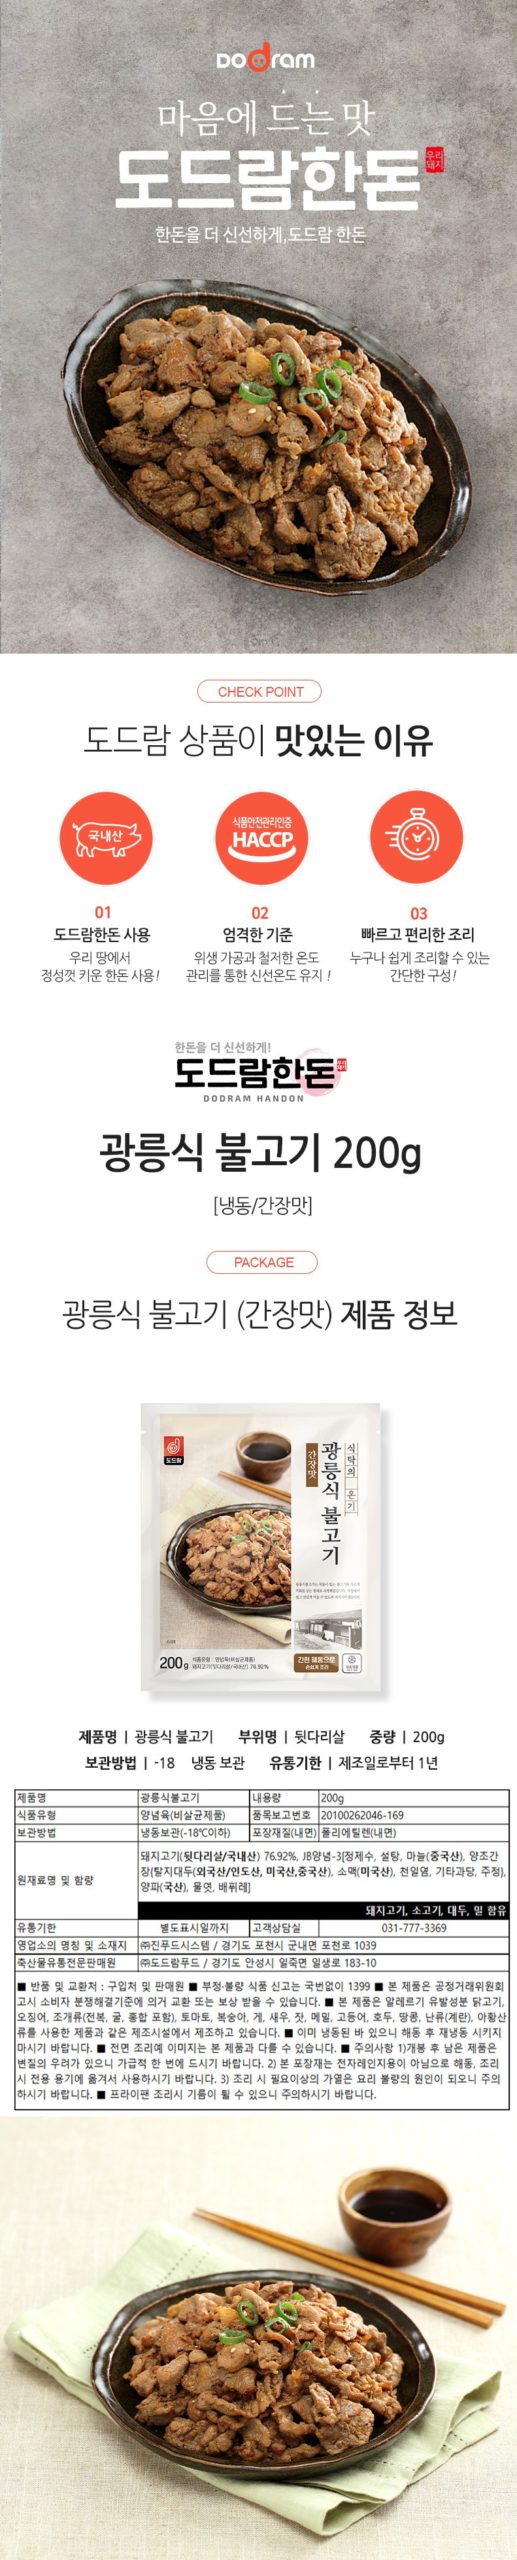 韓國食品-[도드람] 광릉식불고기 (간장맛) 200g